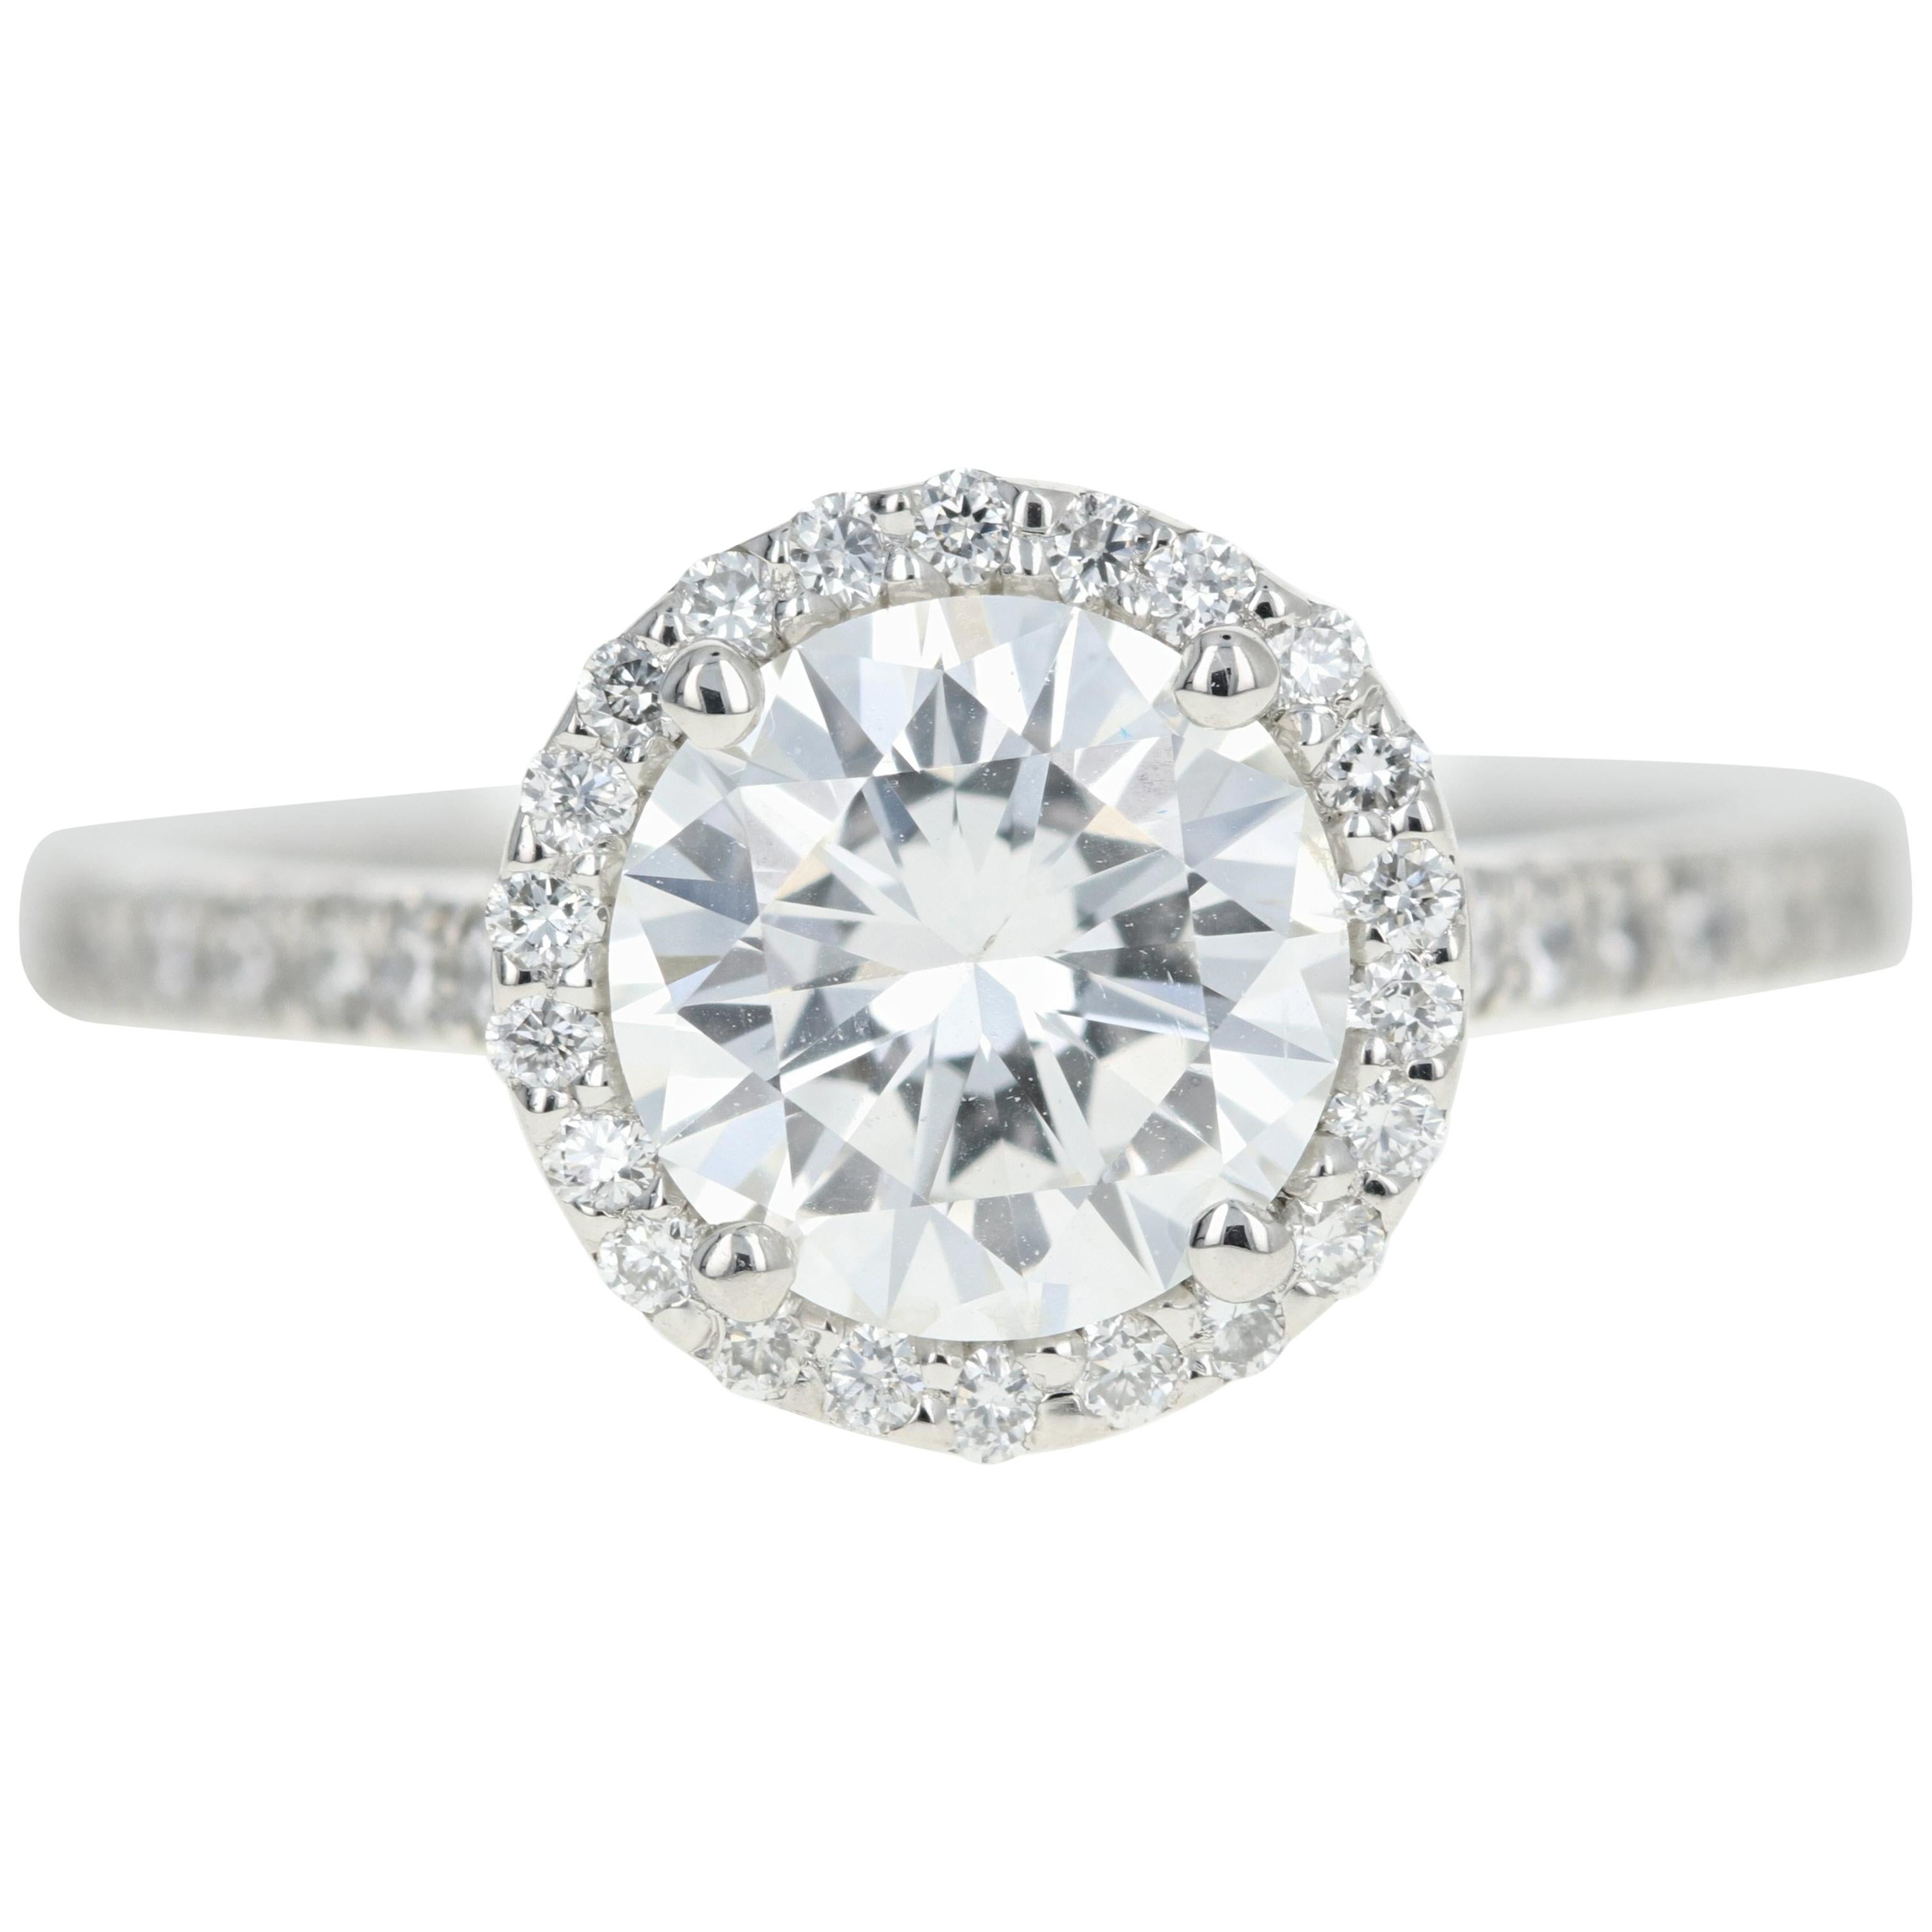 Platinum 1.56 Carat Round Brilliant Cut Diamond Halo Engagement Ring